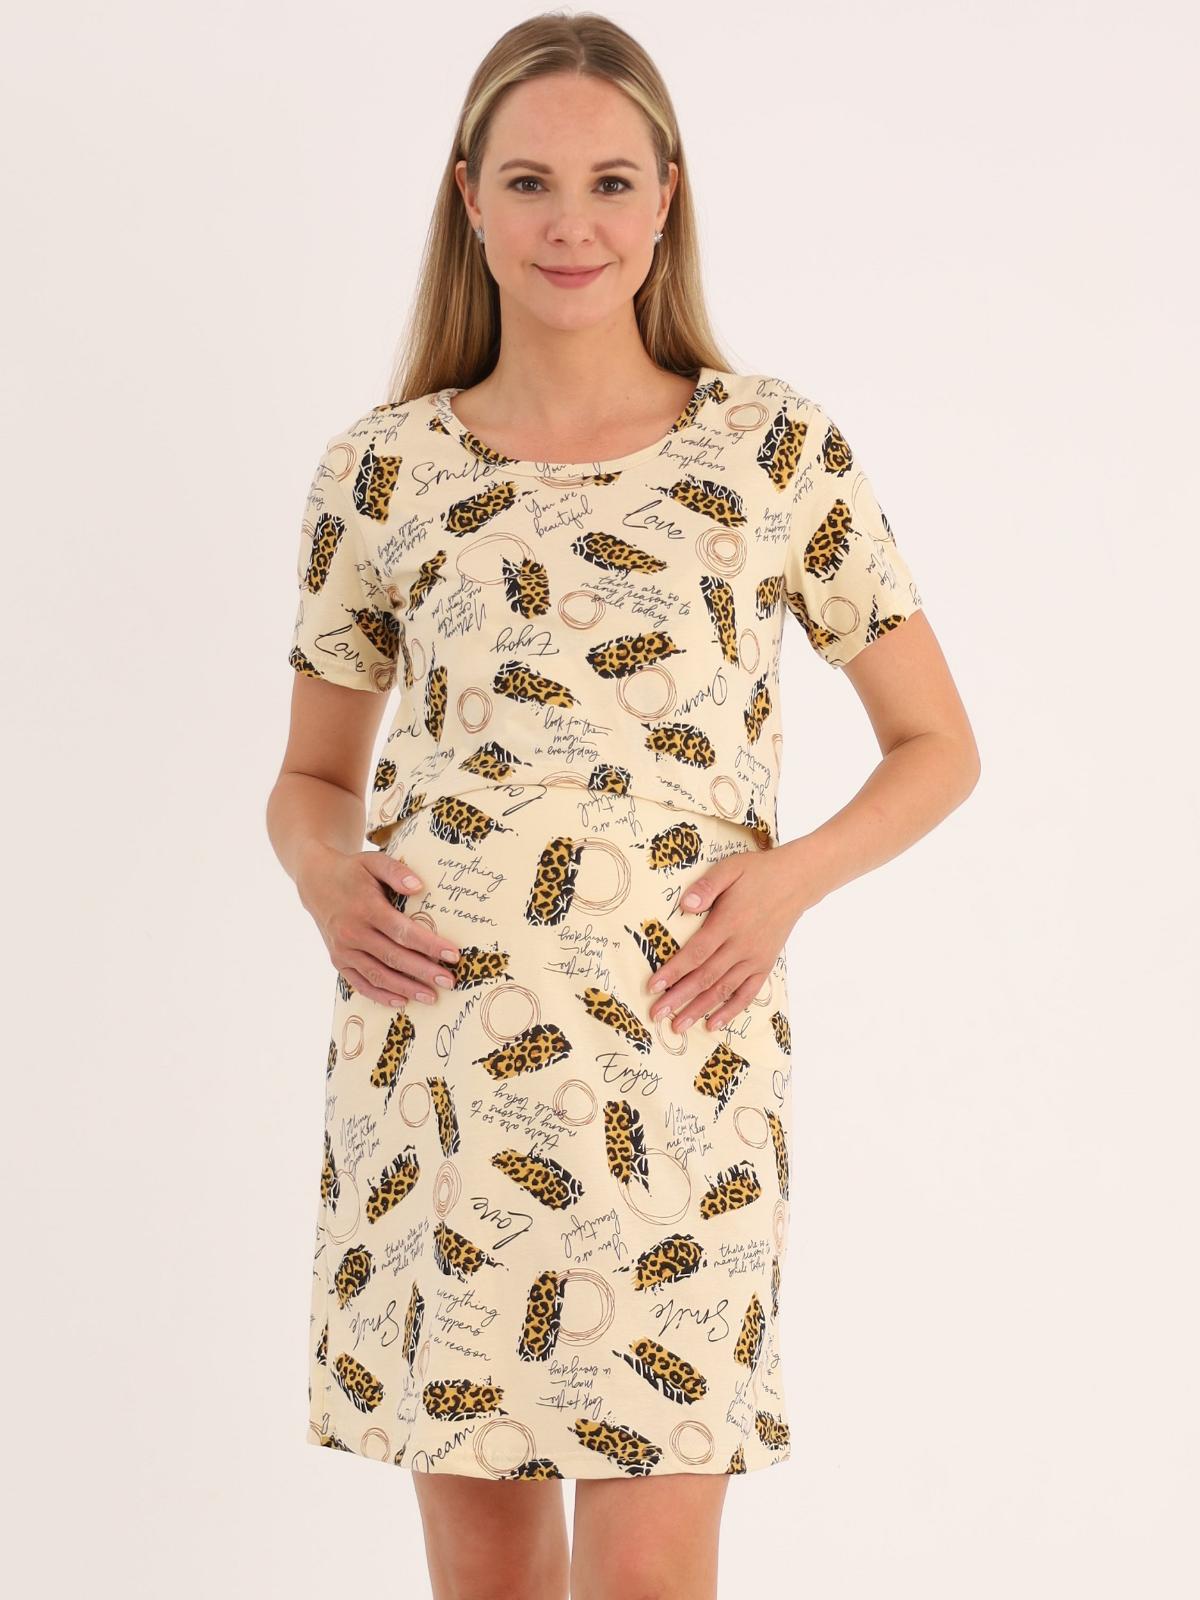 Сорочка для беременных и кормящих (домашнее платье) арт. 360505 бежевая